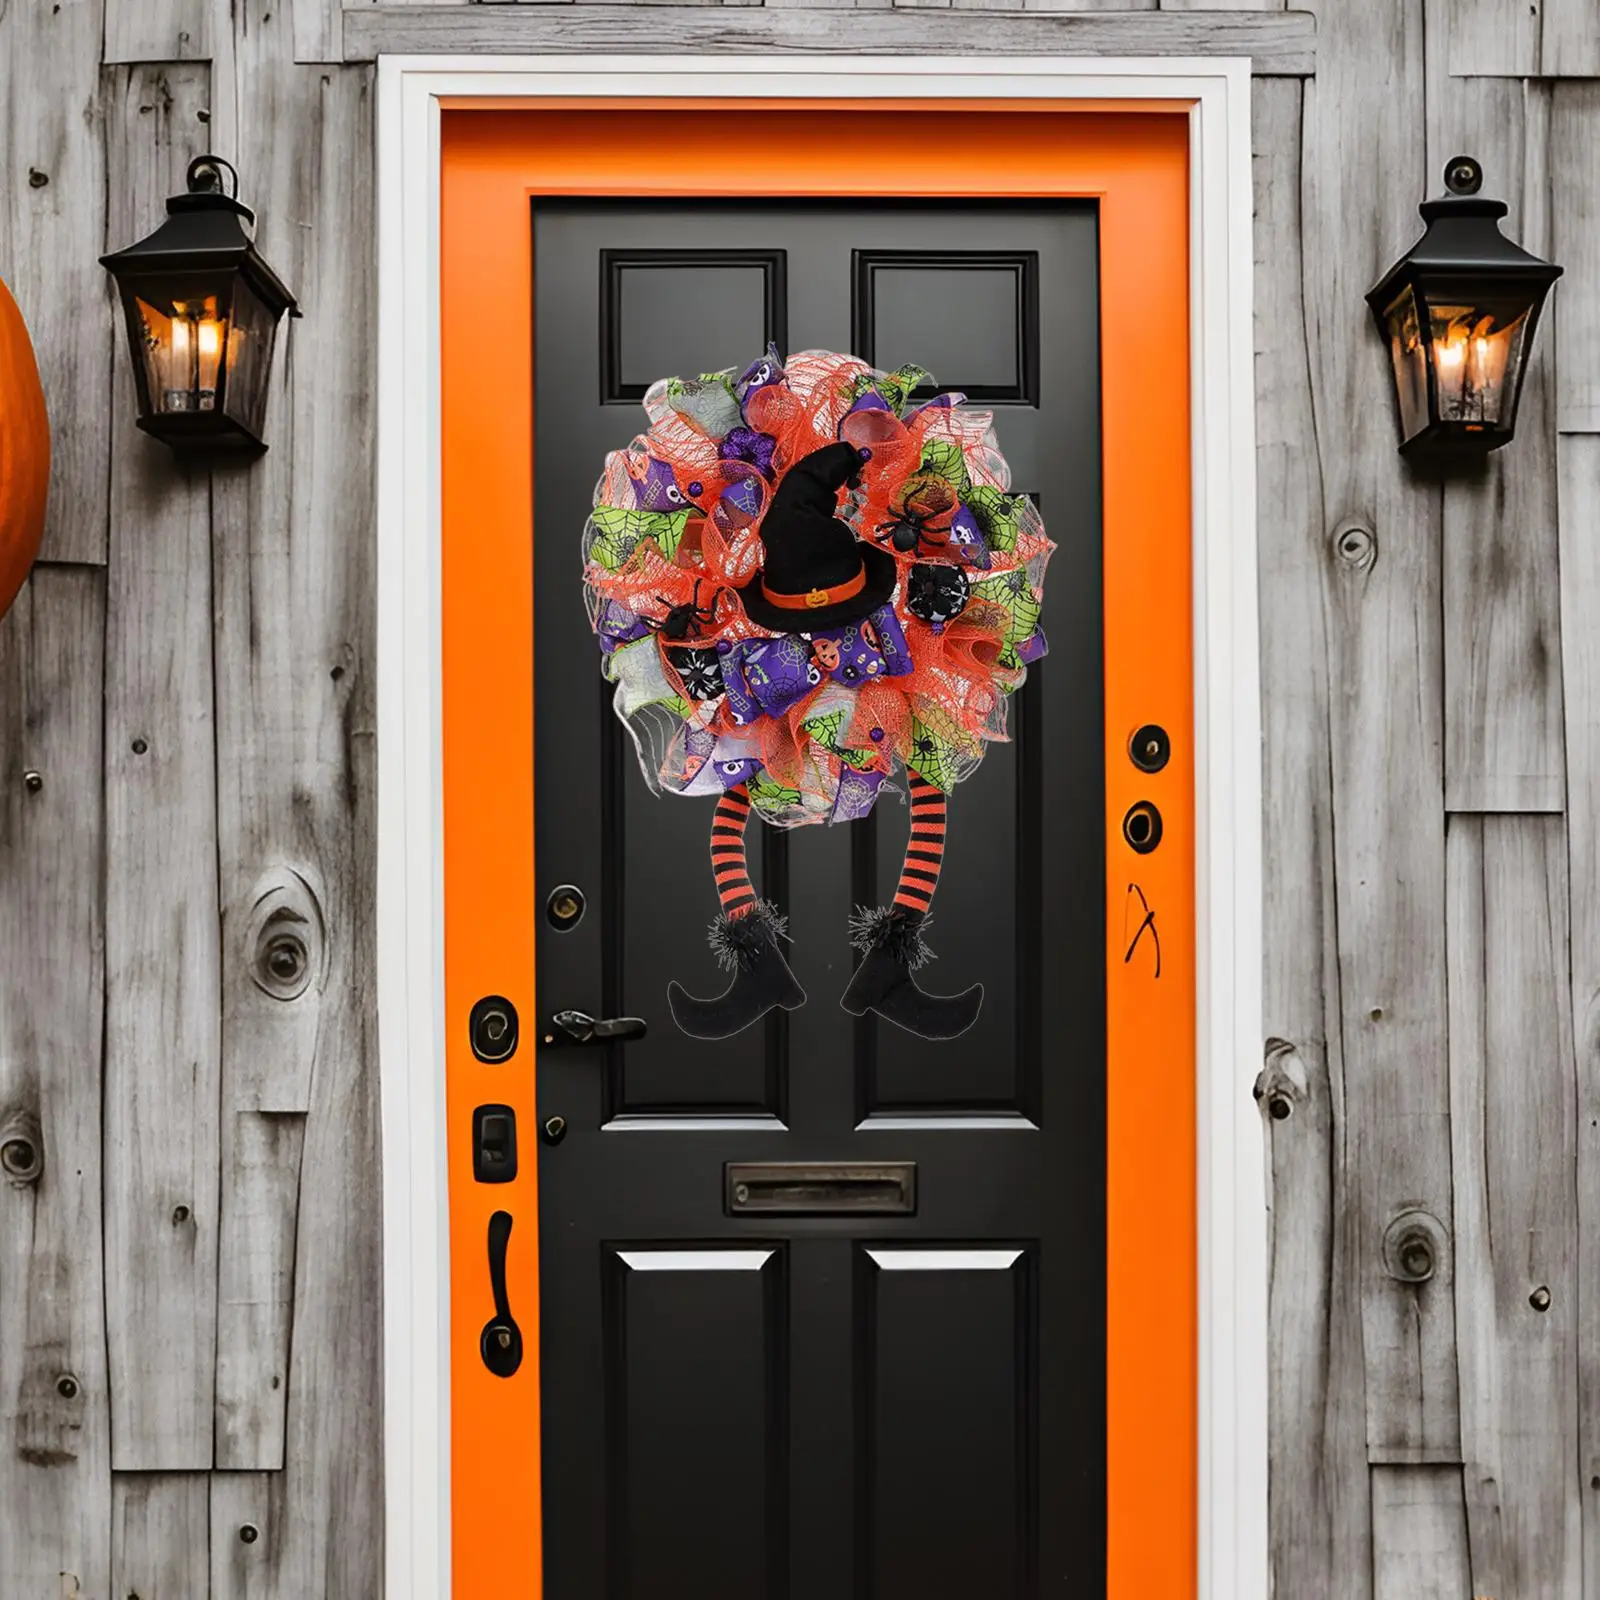 Halloween Wreath for Front Door 23.62inchx15.75inch Handmade Two Long Legs Garland for Indoor Outdoor Home Window